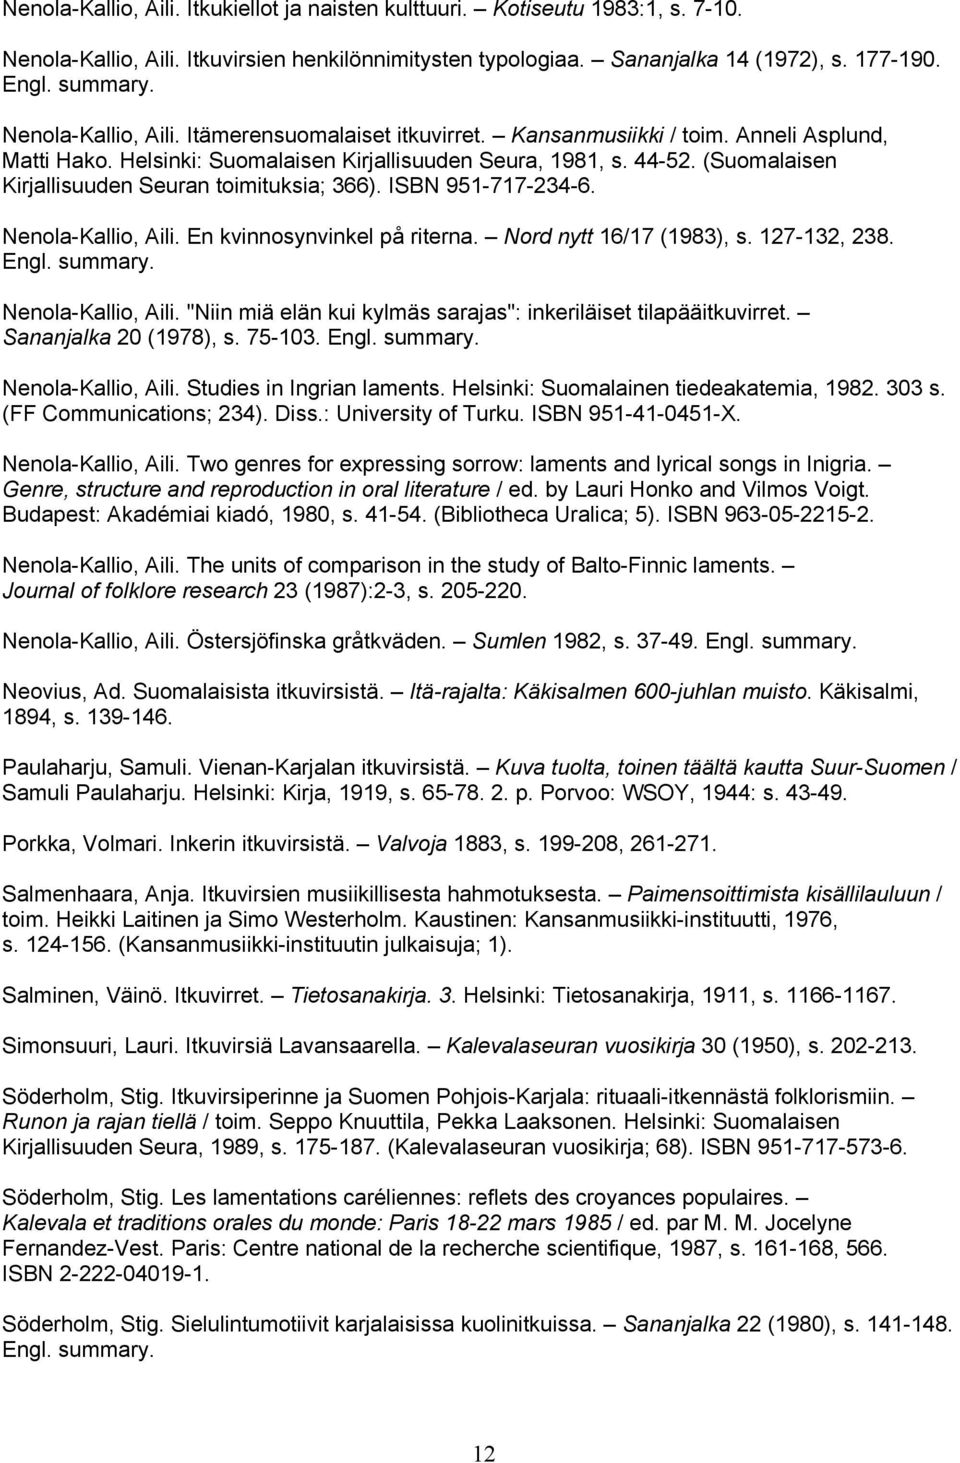 (Suomalaisen Kirjallisuuden Seuran toimituksia; 366). ISBN 951-717-234-6. Nenola-Kallio, Aili. En kvinnosynvinkel på riterna. Nord nytt 16/17 (1983), s. 127-132, 238. Engl. summary.